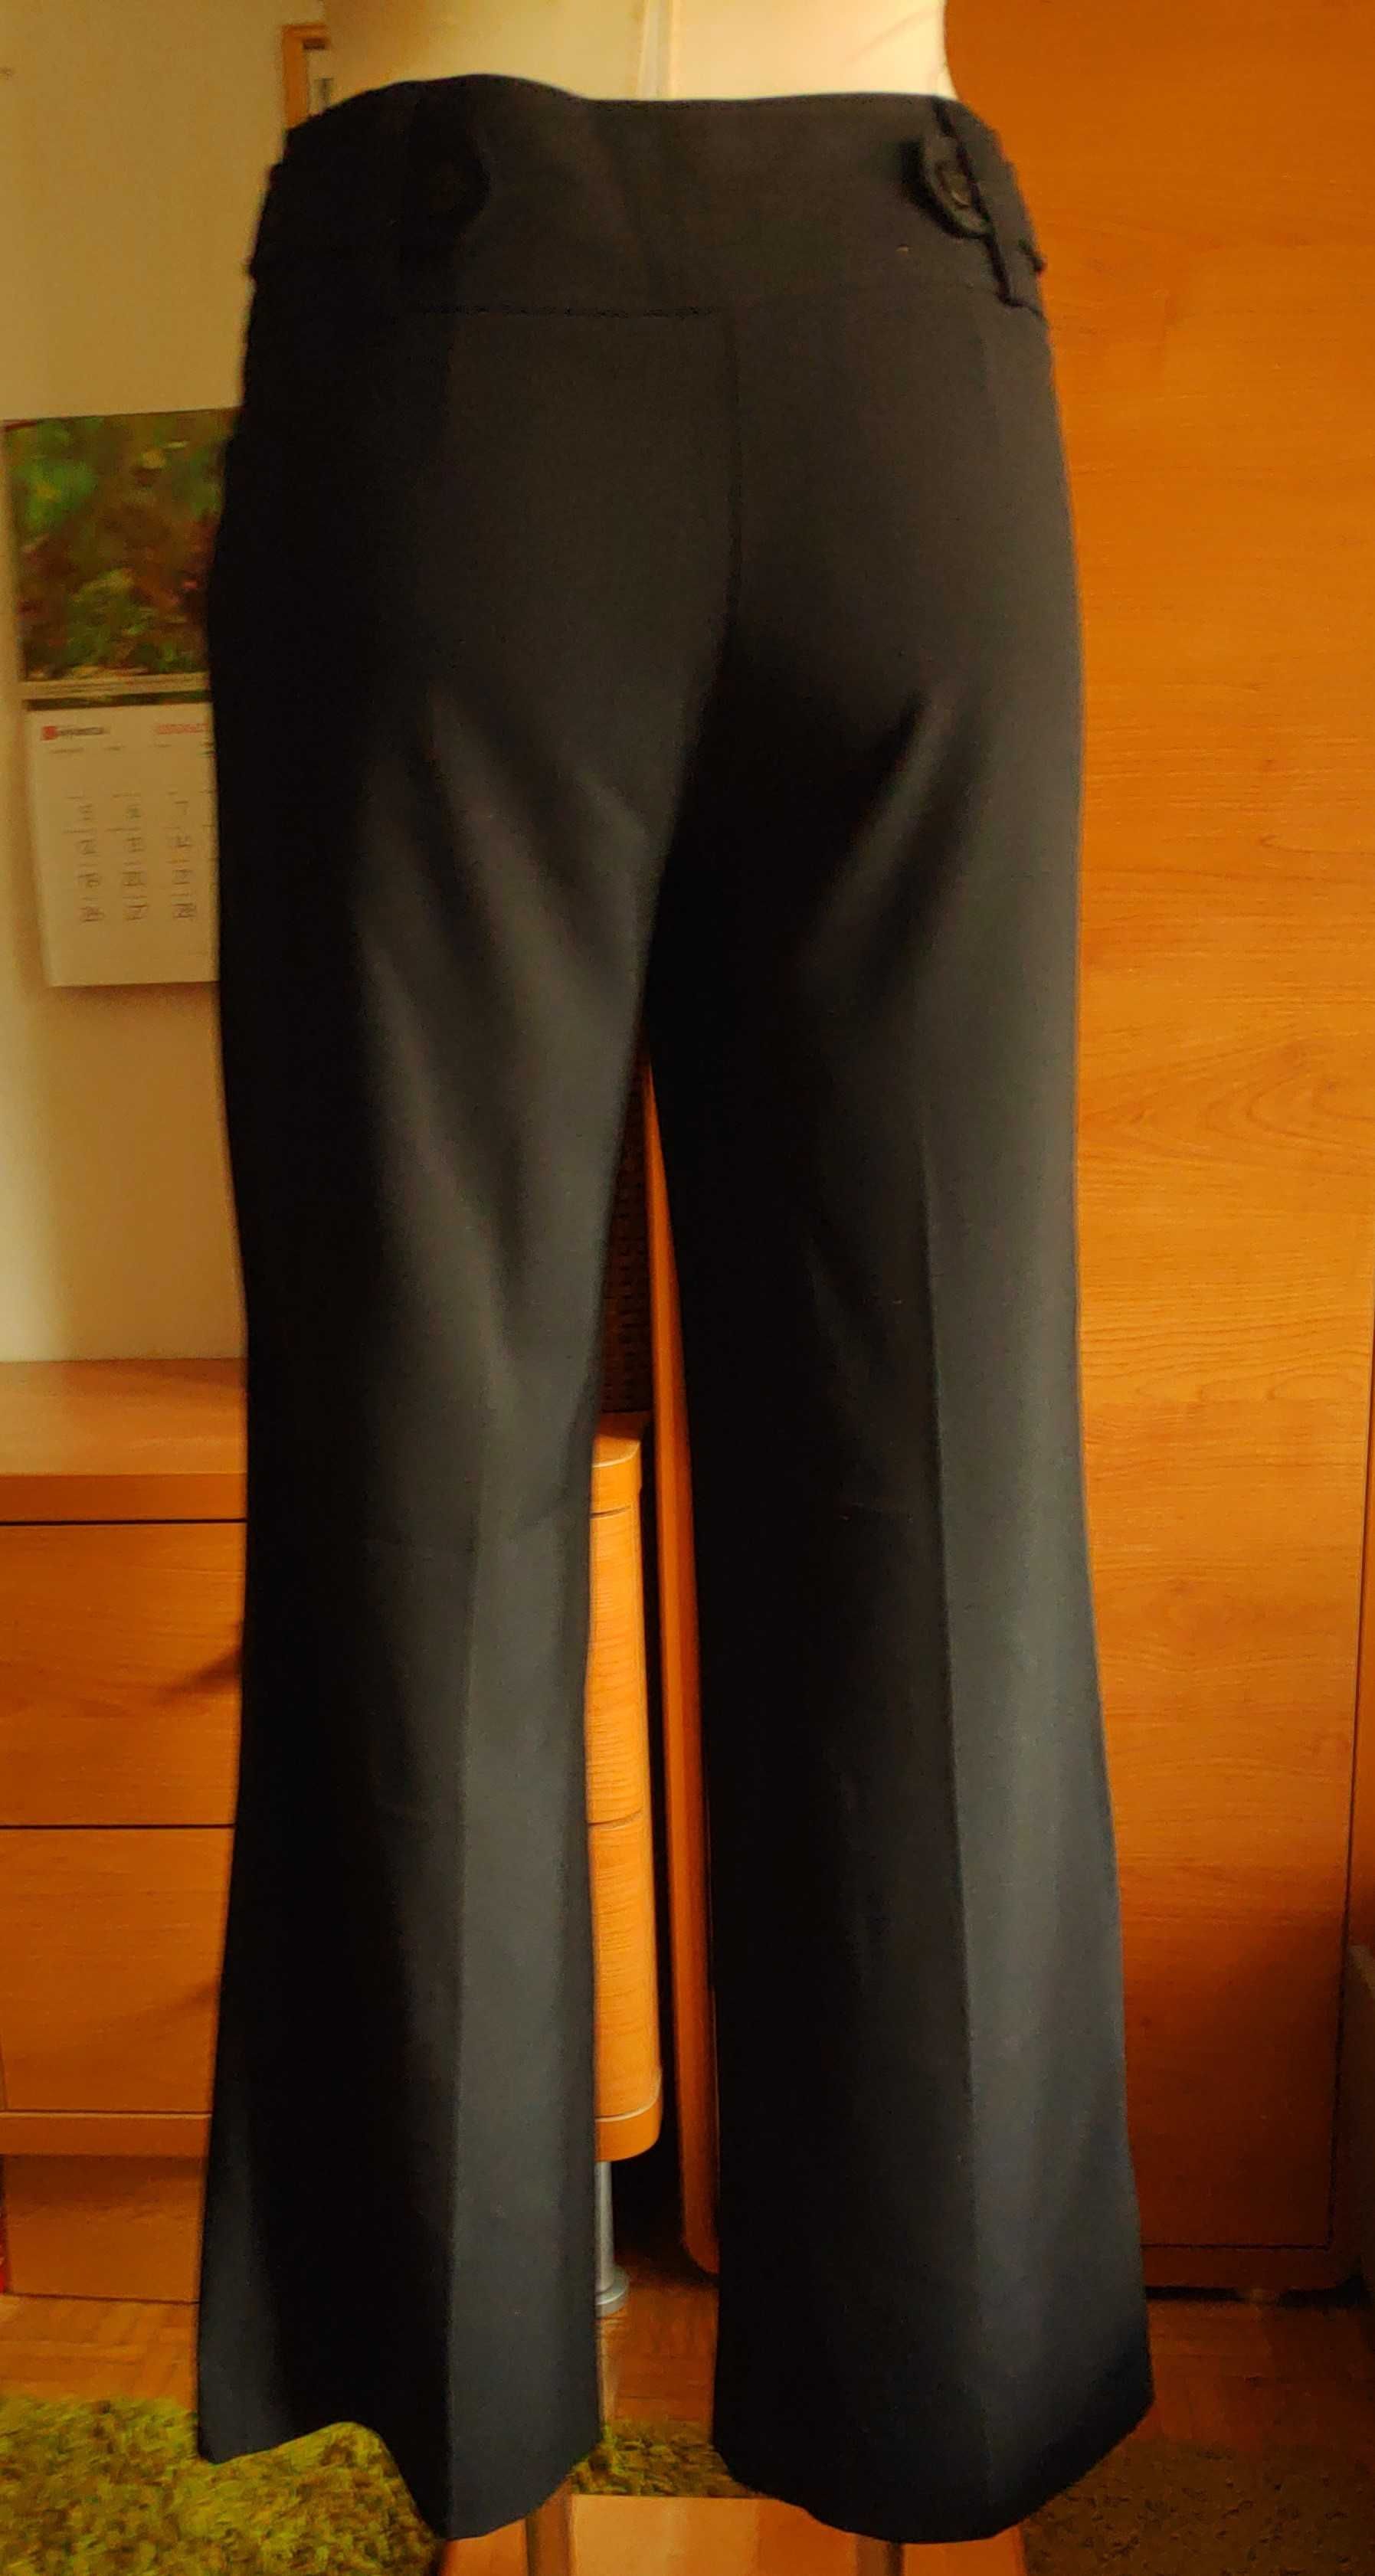 Miękkie, garniturowe czarne spodnie New Look, rozmiar 36